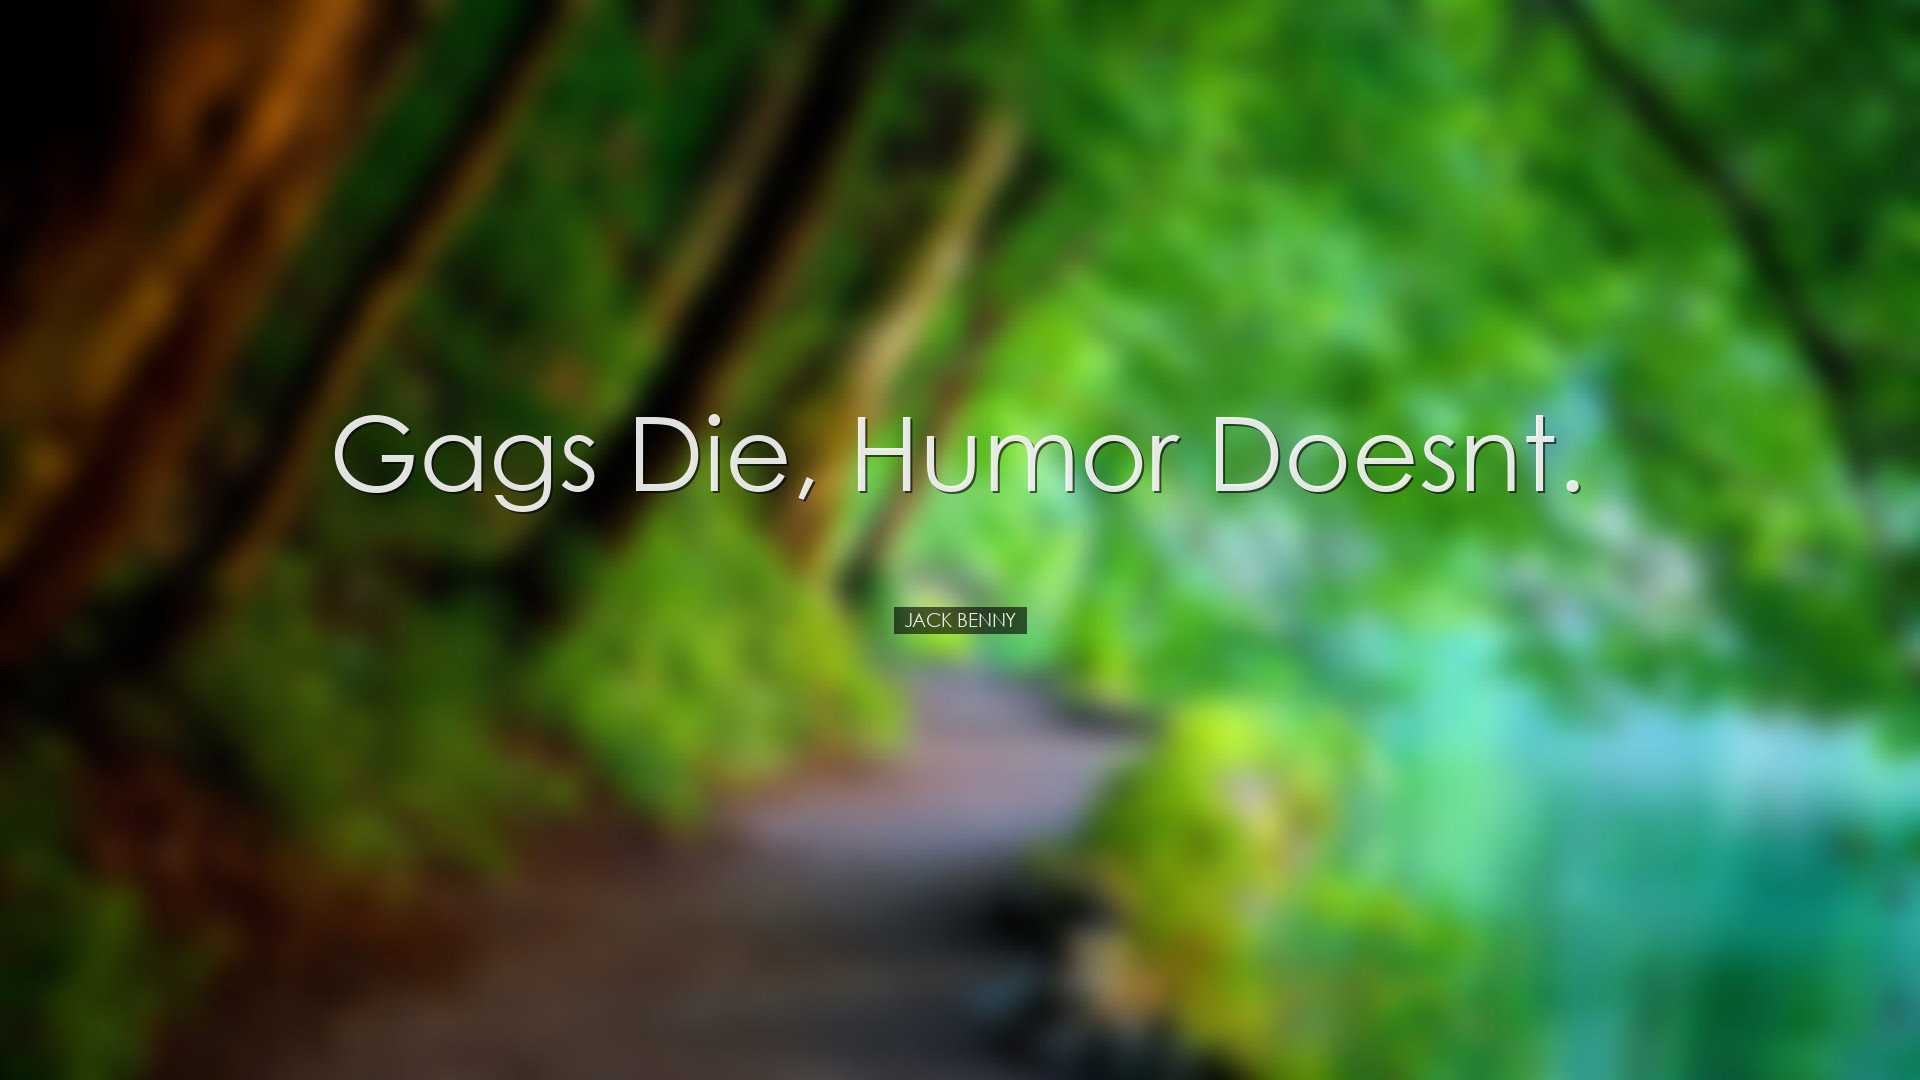 Gags die, humor doesnt. - Jack Benny